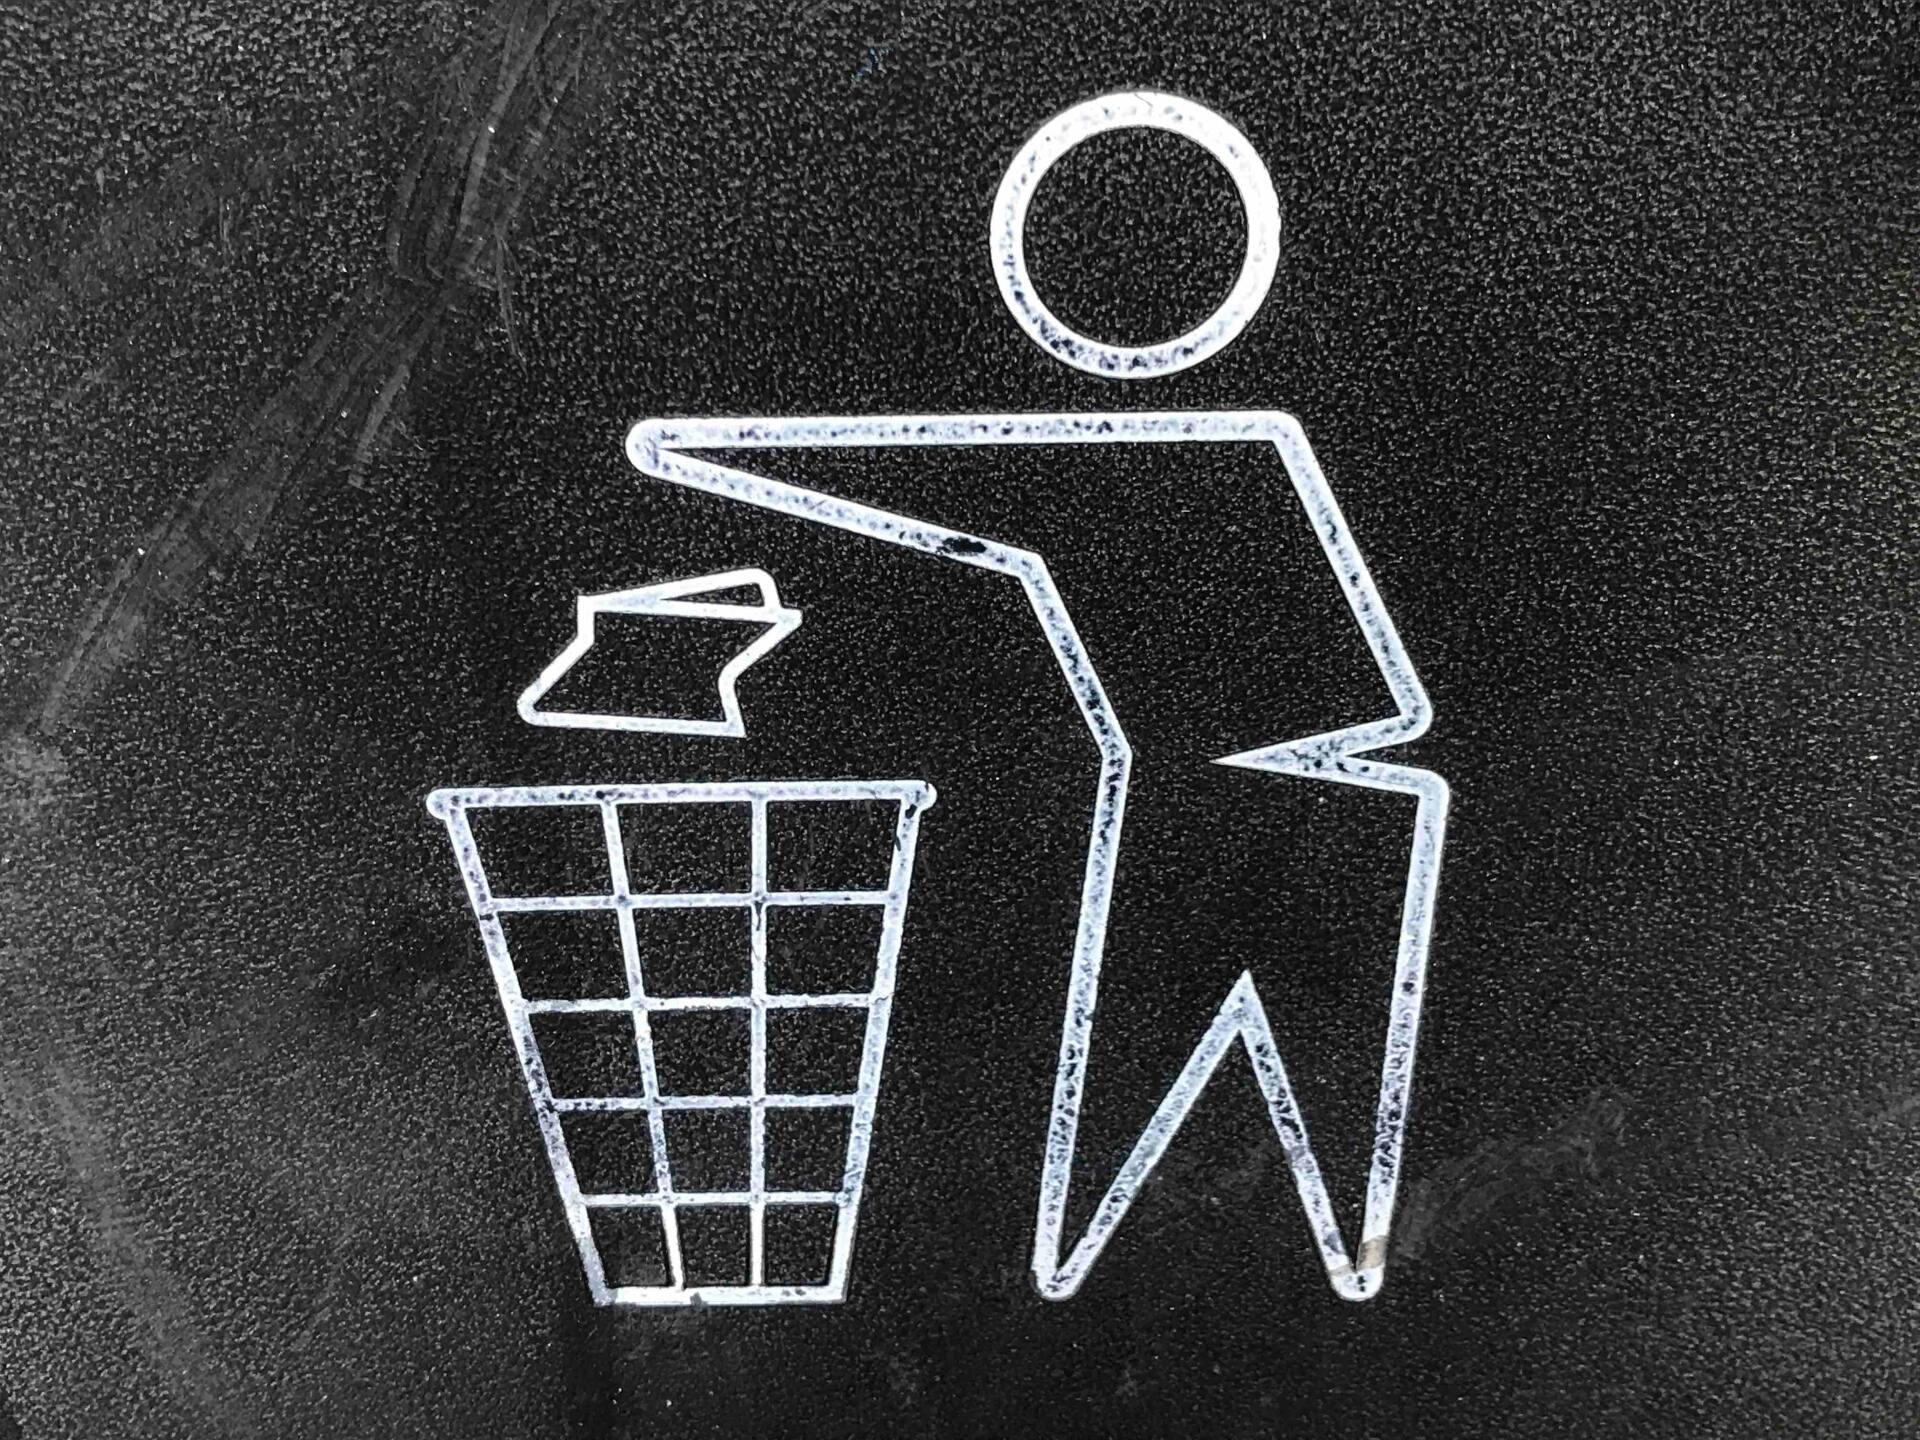 cartel indicando cómo manejar los residuo sólidos